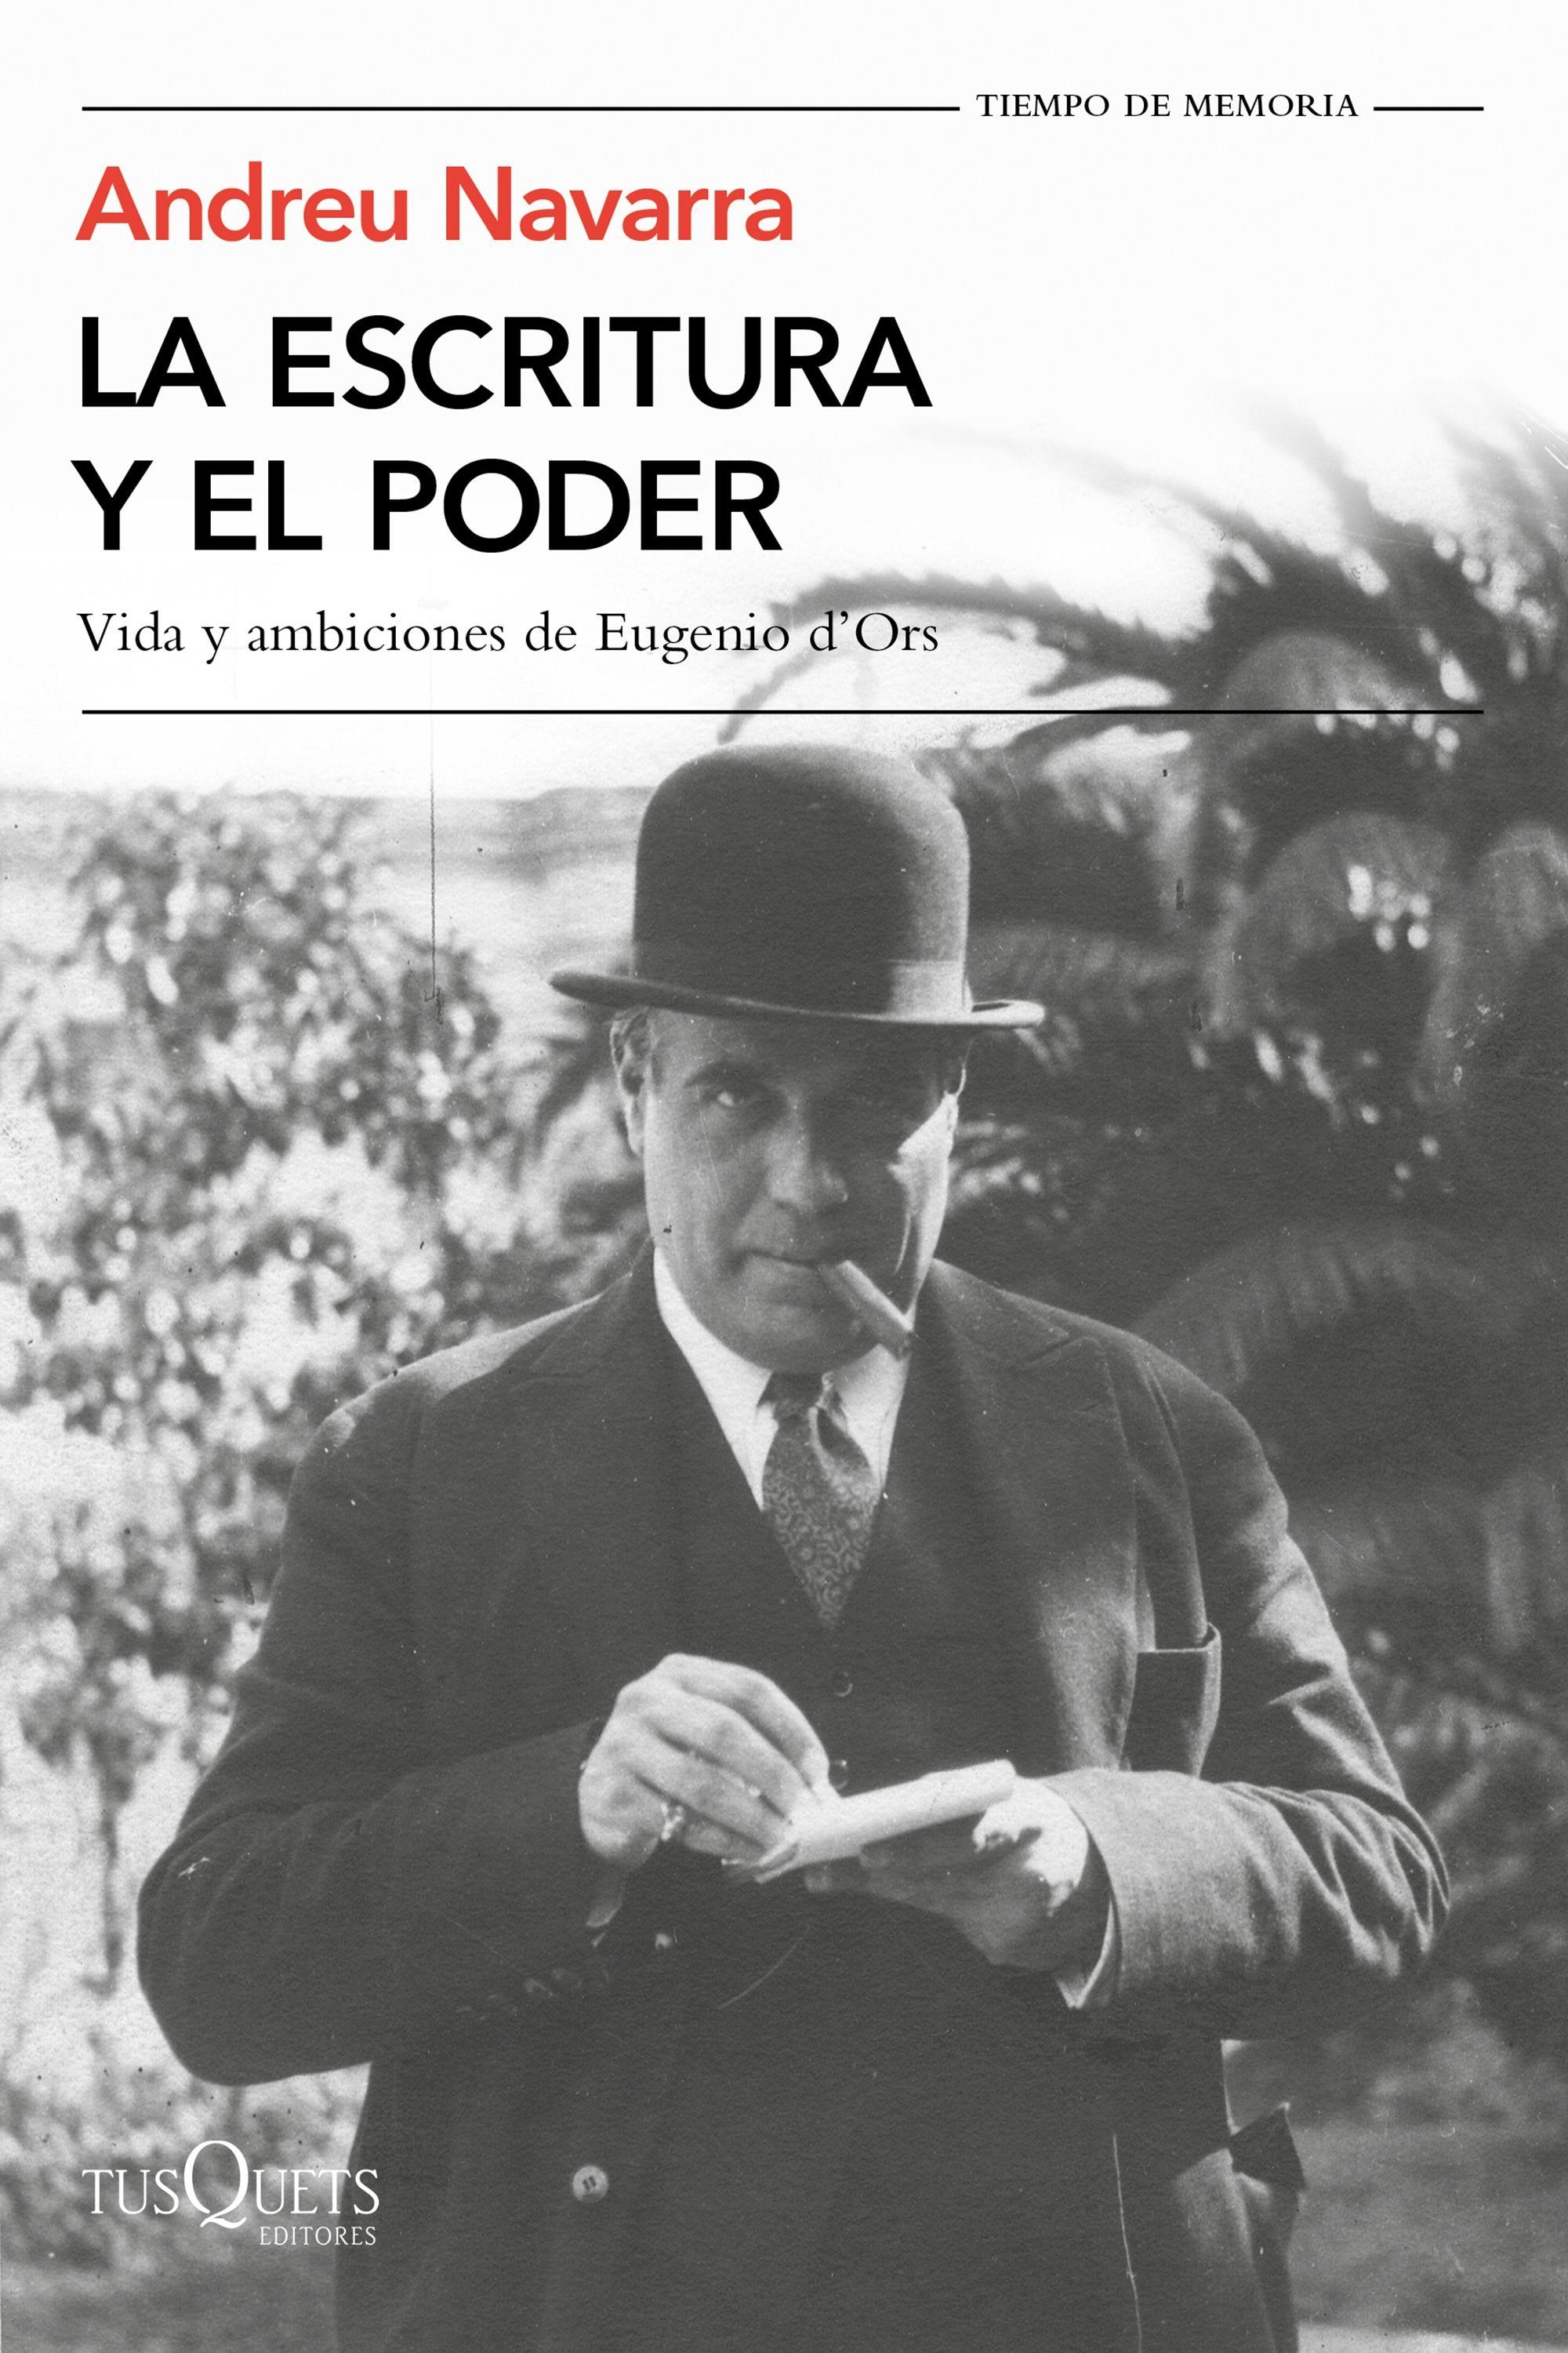 La escritura y el poder "Vida y ambiciones de Eugenio D'Ors". 